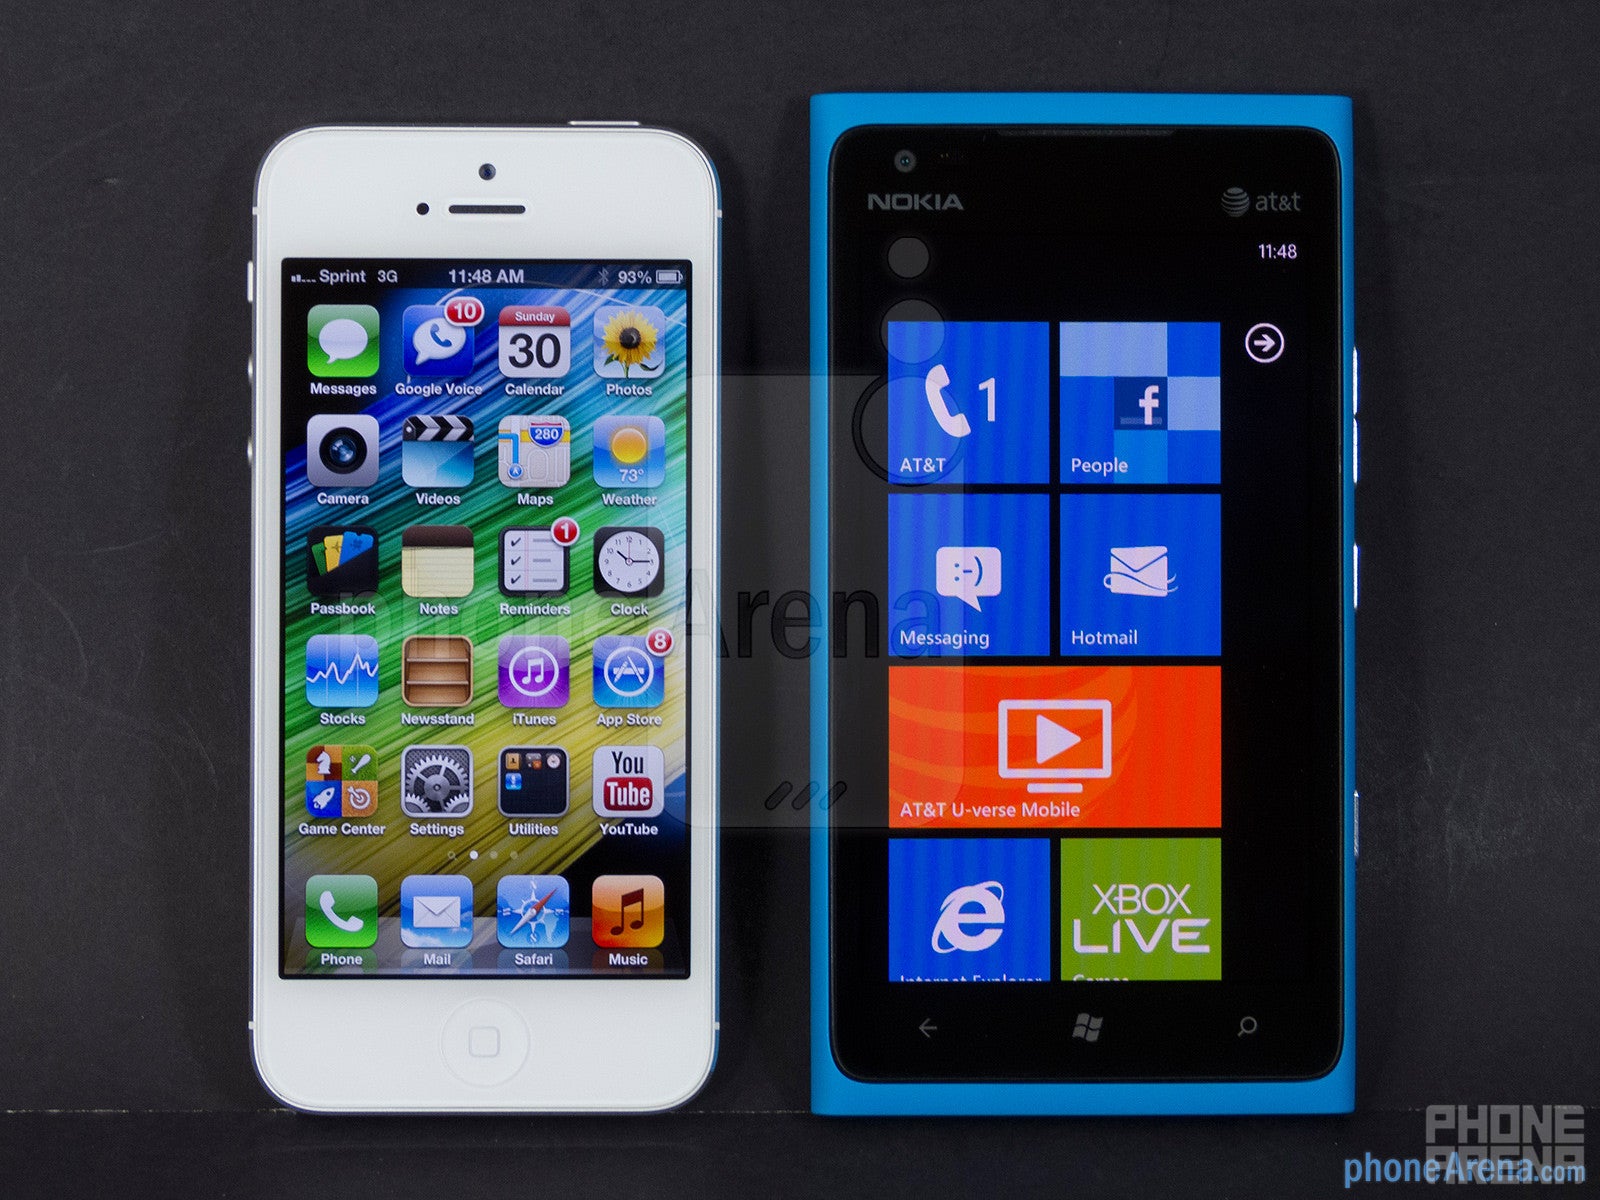 Apple iPhone 5 vs Nokia Lumia 900